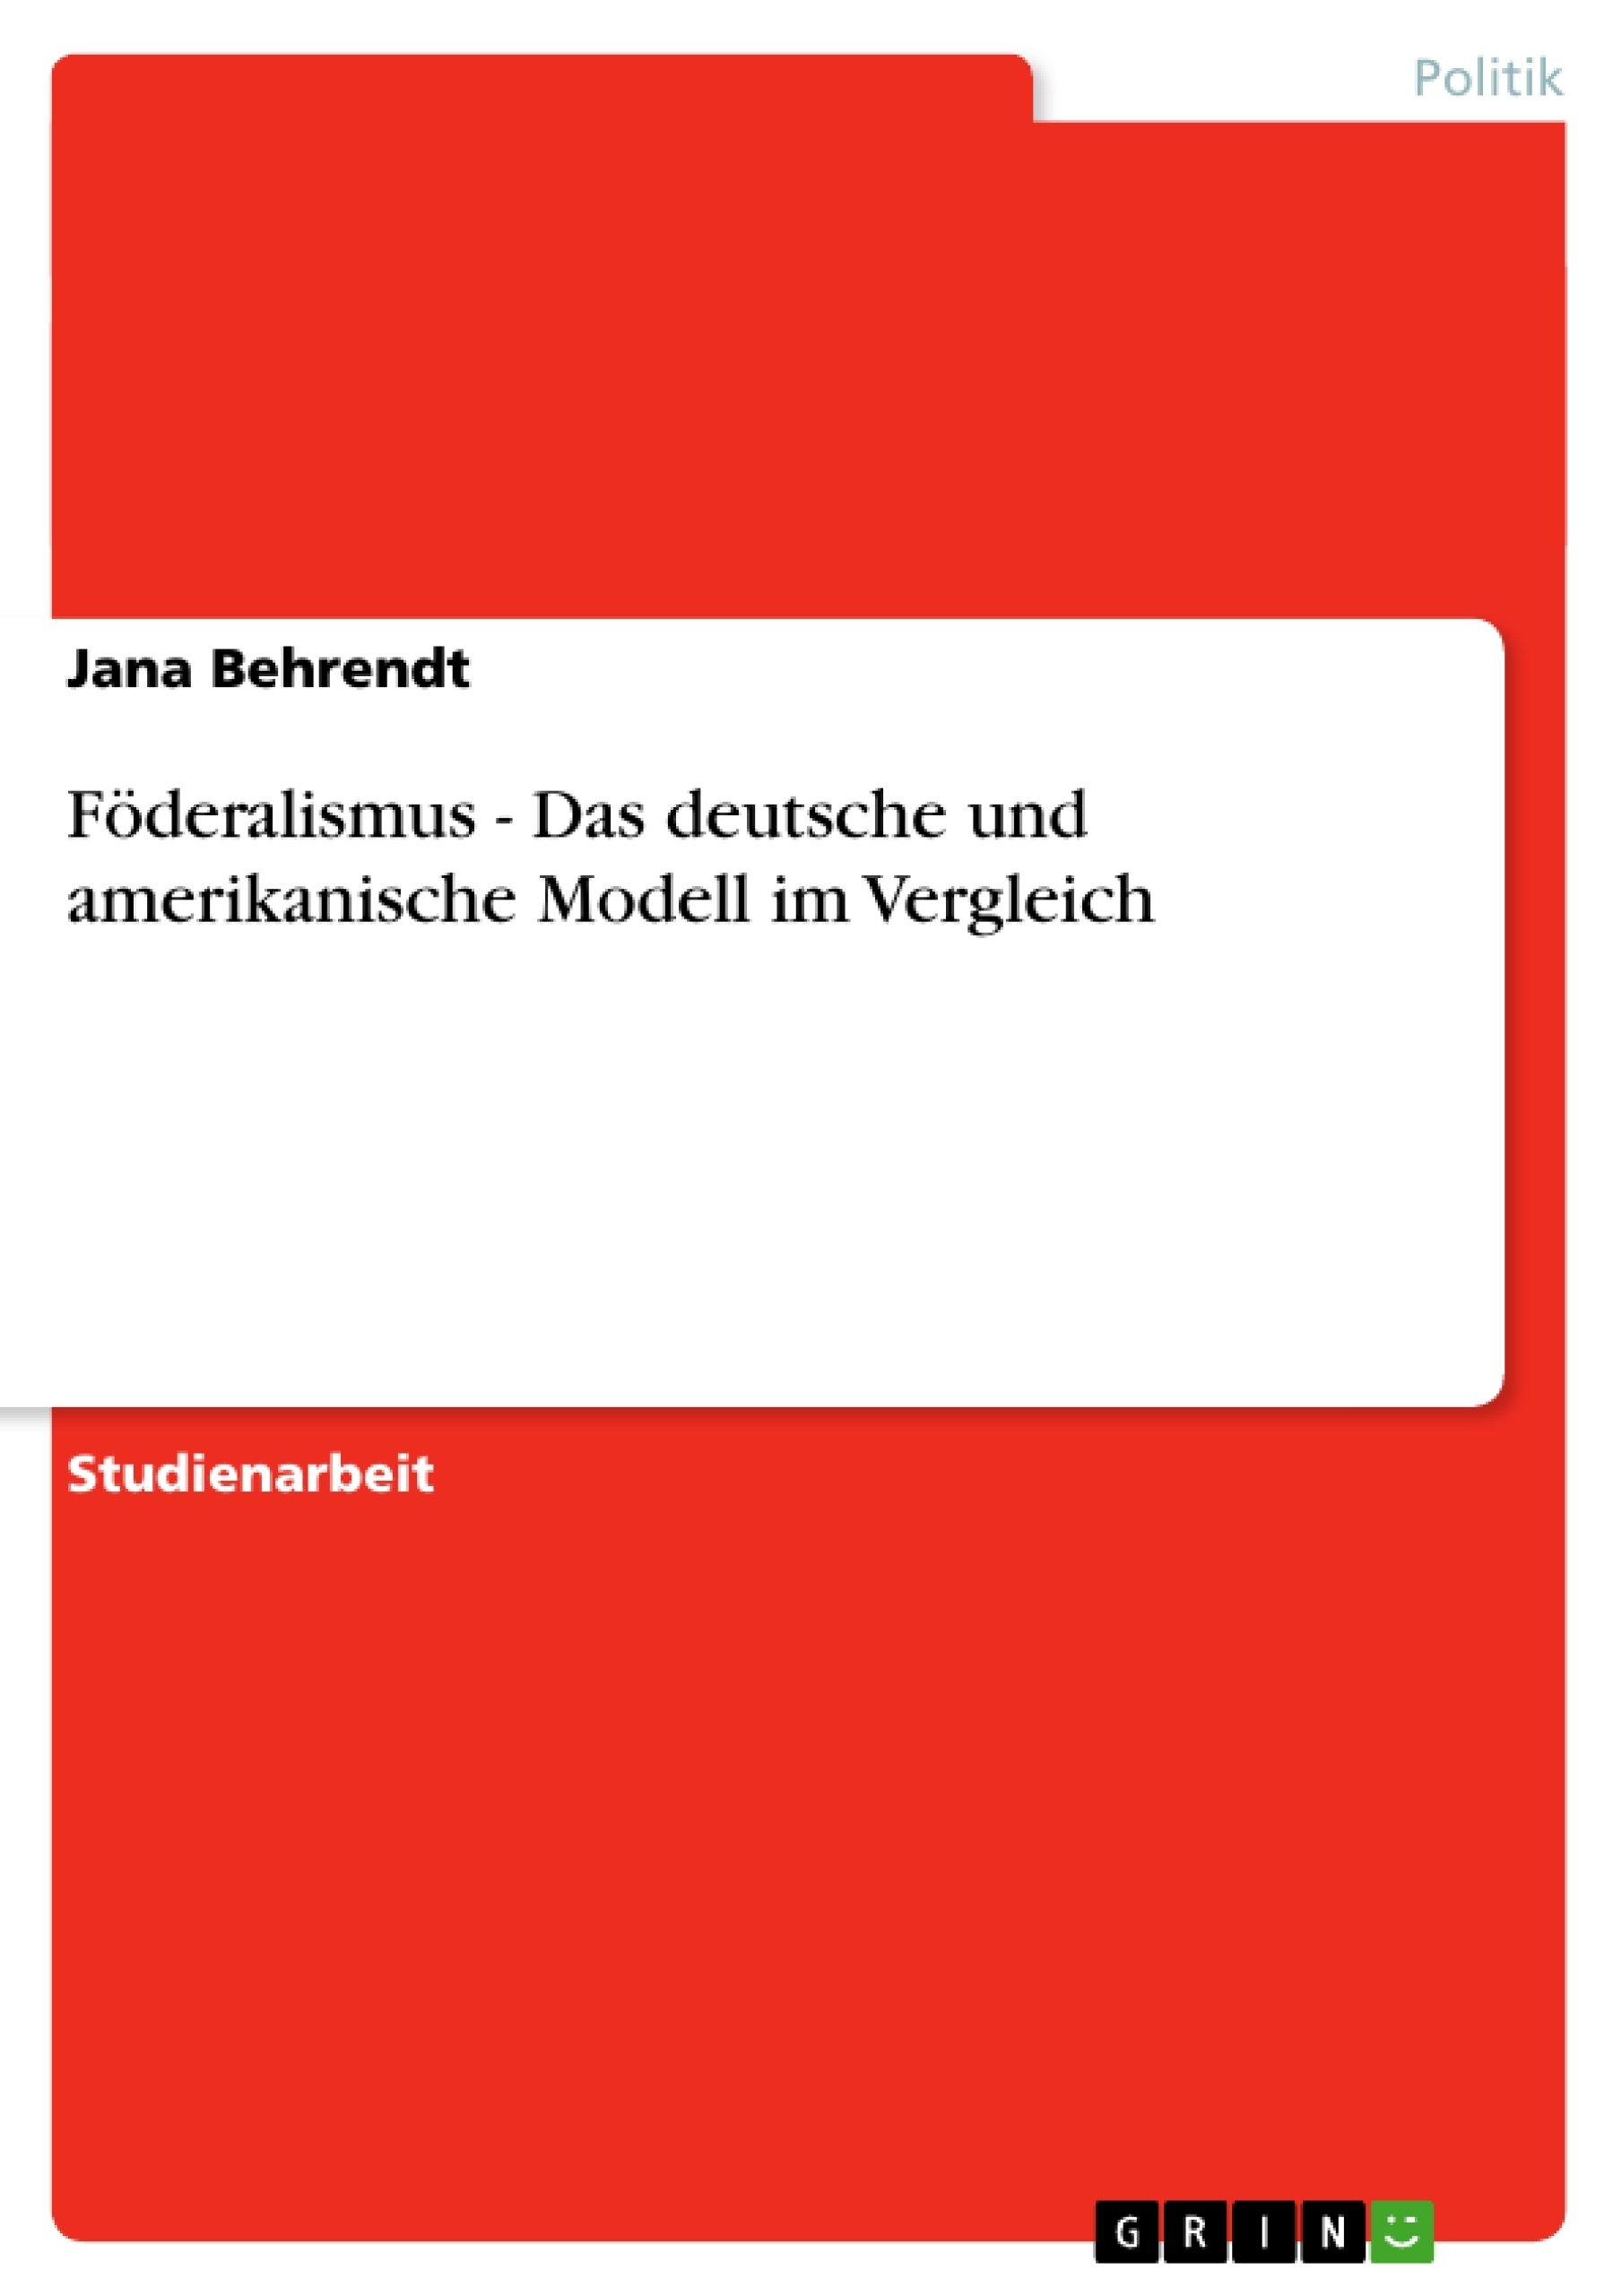 Title: Föderalismus - Das deutsche und amerikanische Modell im Vergleich